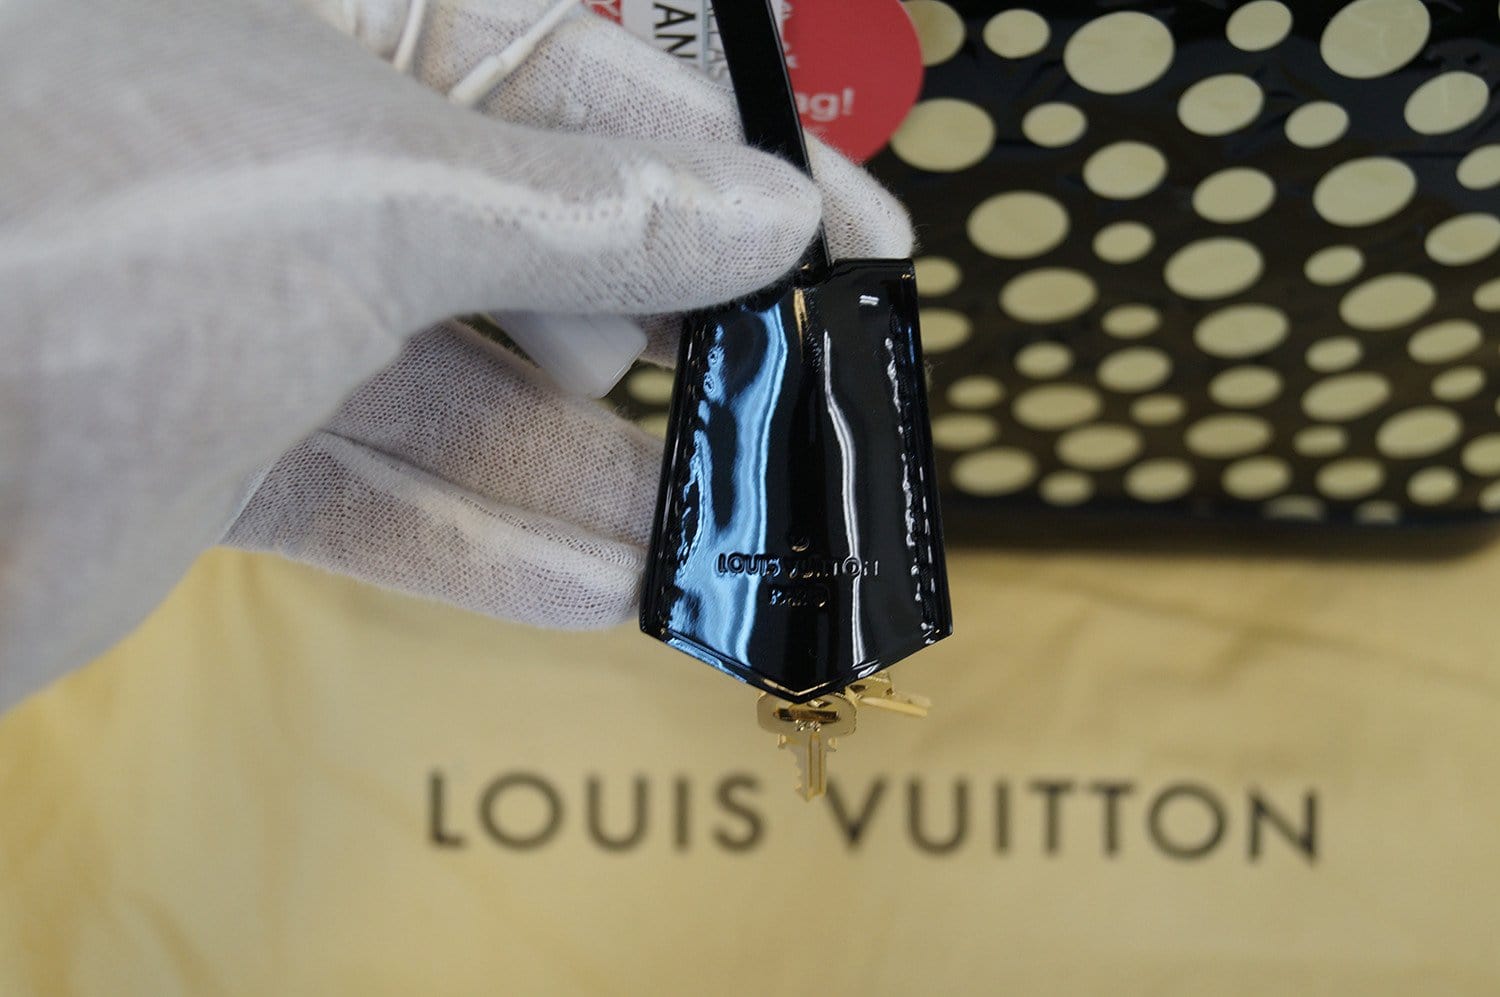 Yayoi Kusama  Louis Vuitton Limited Edition White Infinity Dots